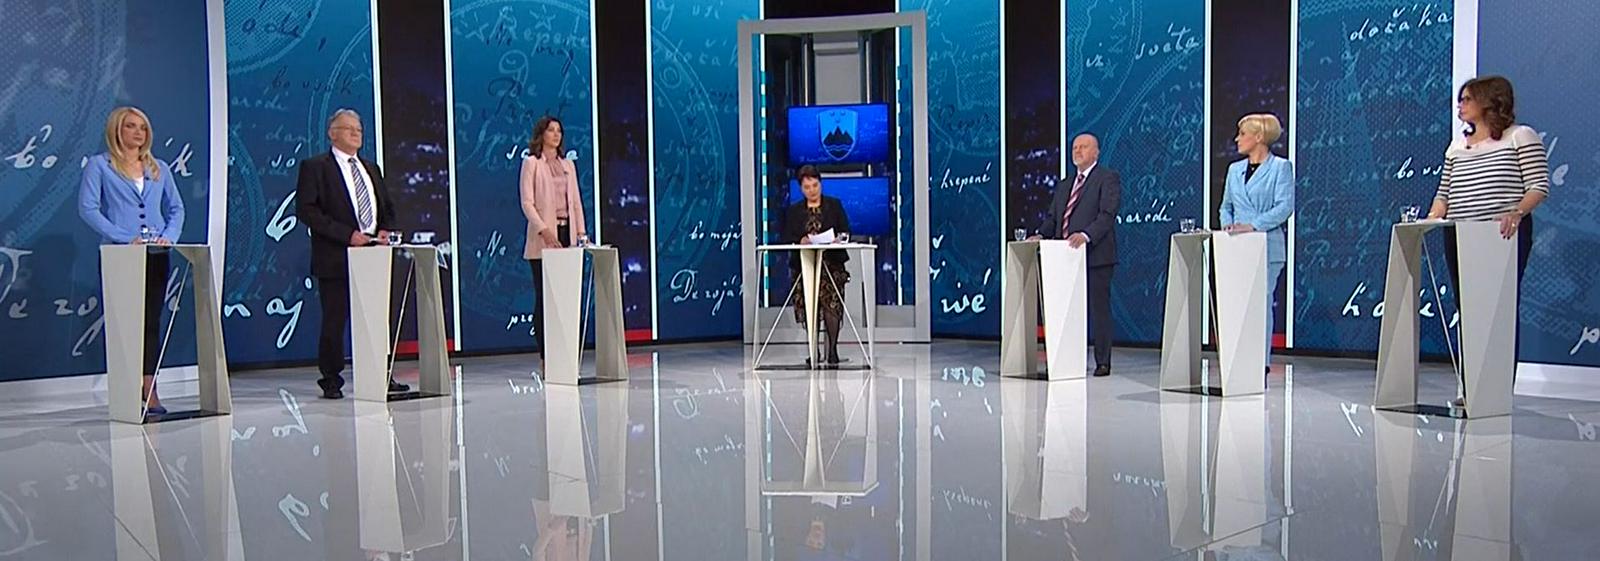 Soočenje predstavnikov strank. Foto: TV Slovenija/zajem zaslona